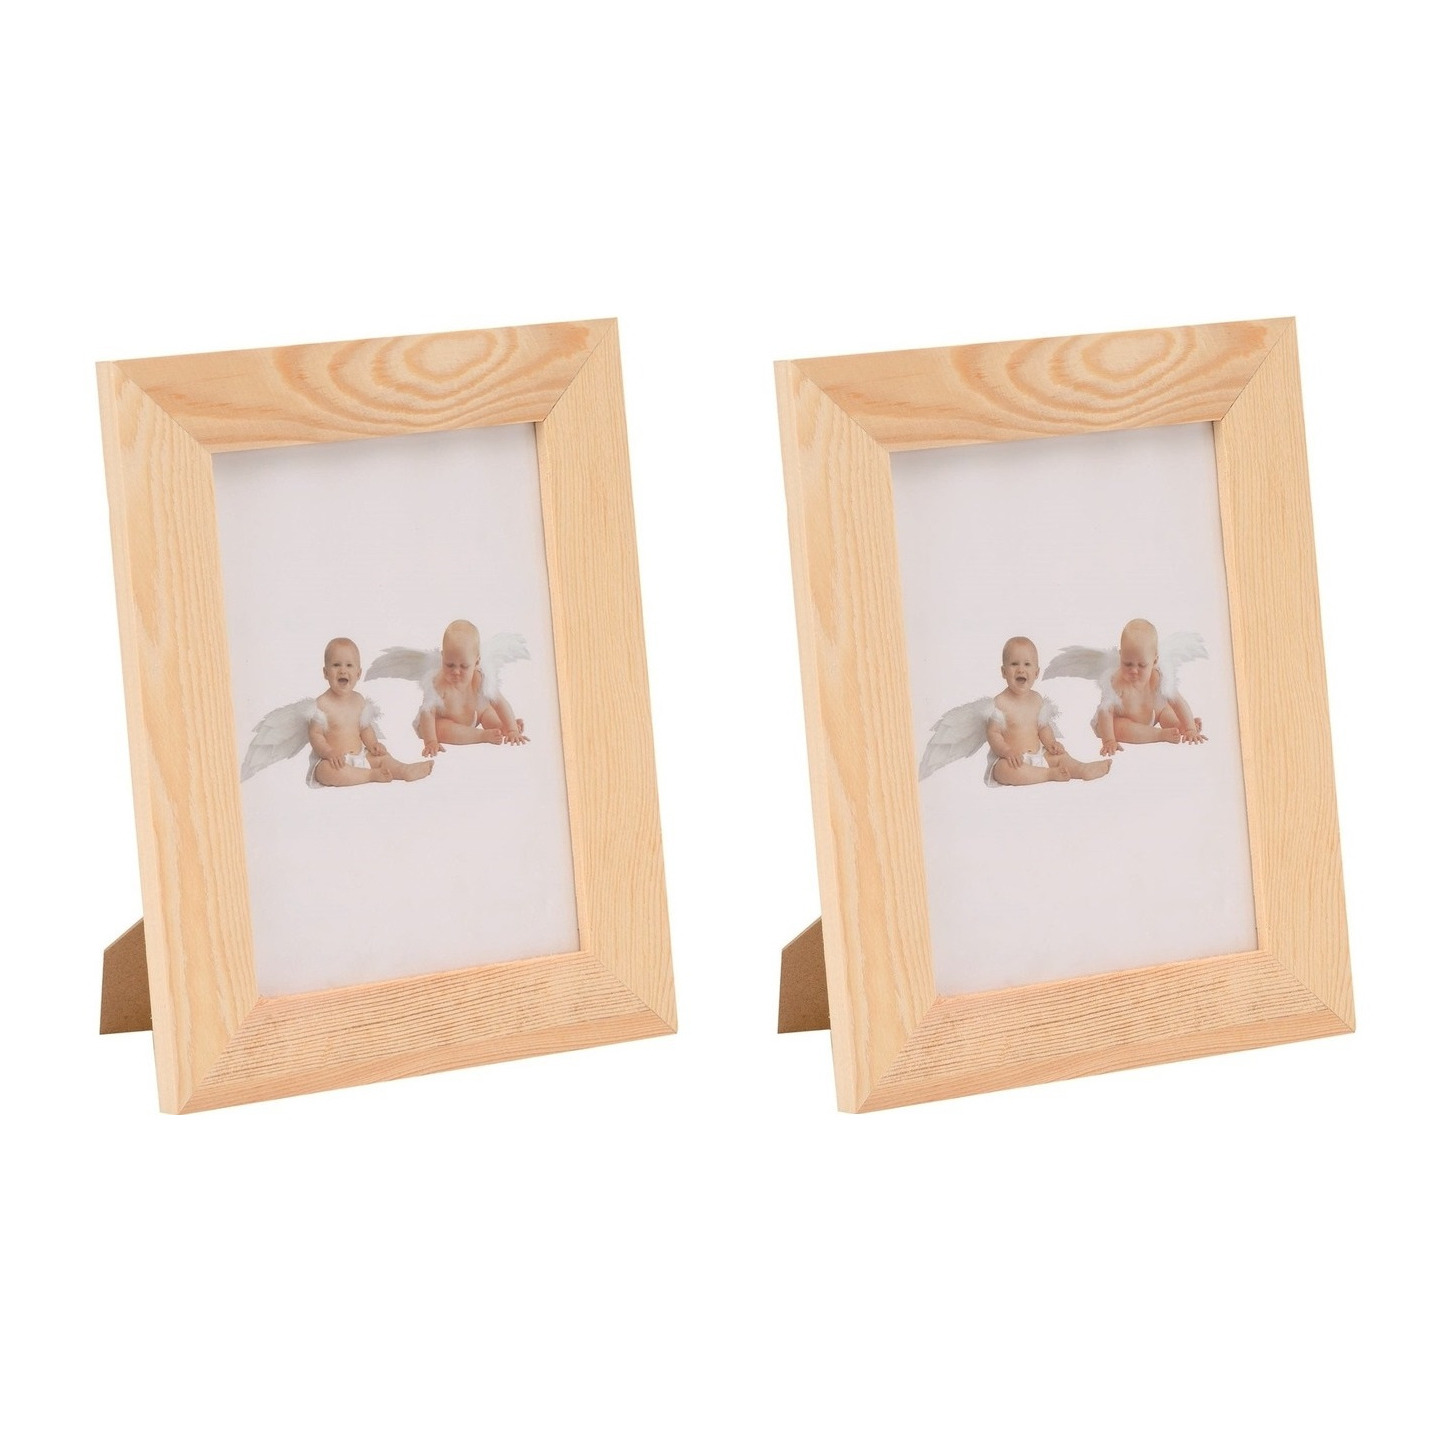 3x DIY houten fotolijstjes 17,5 x 22,5 cm hobby-knutselmateriaal